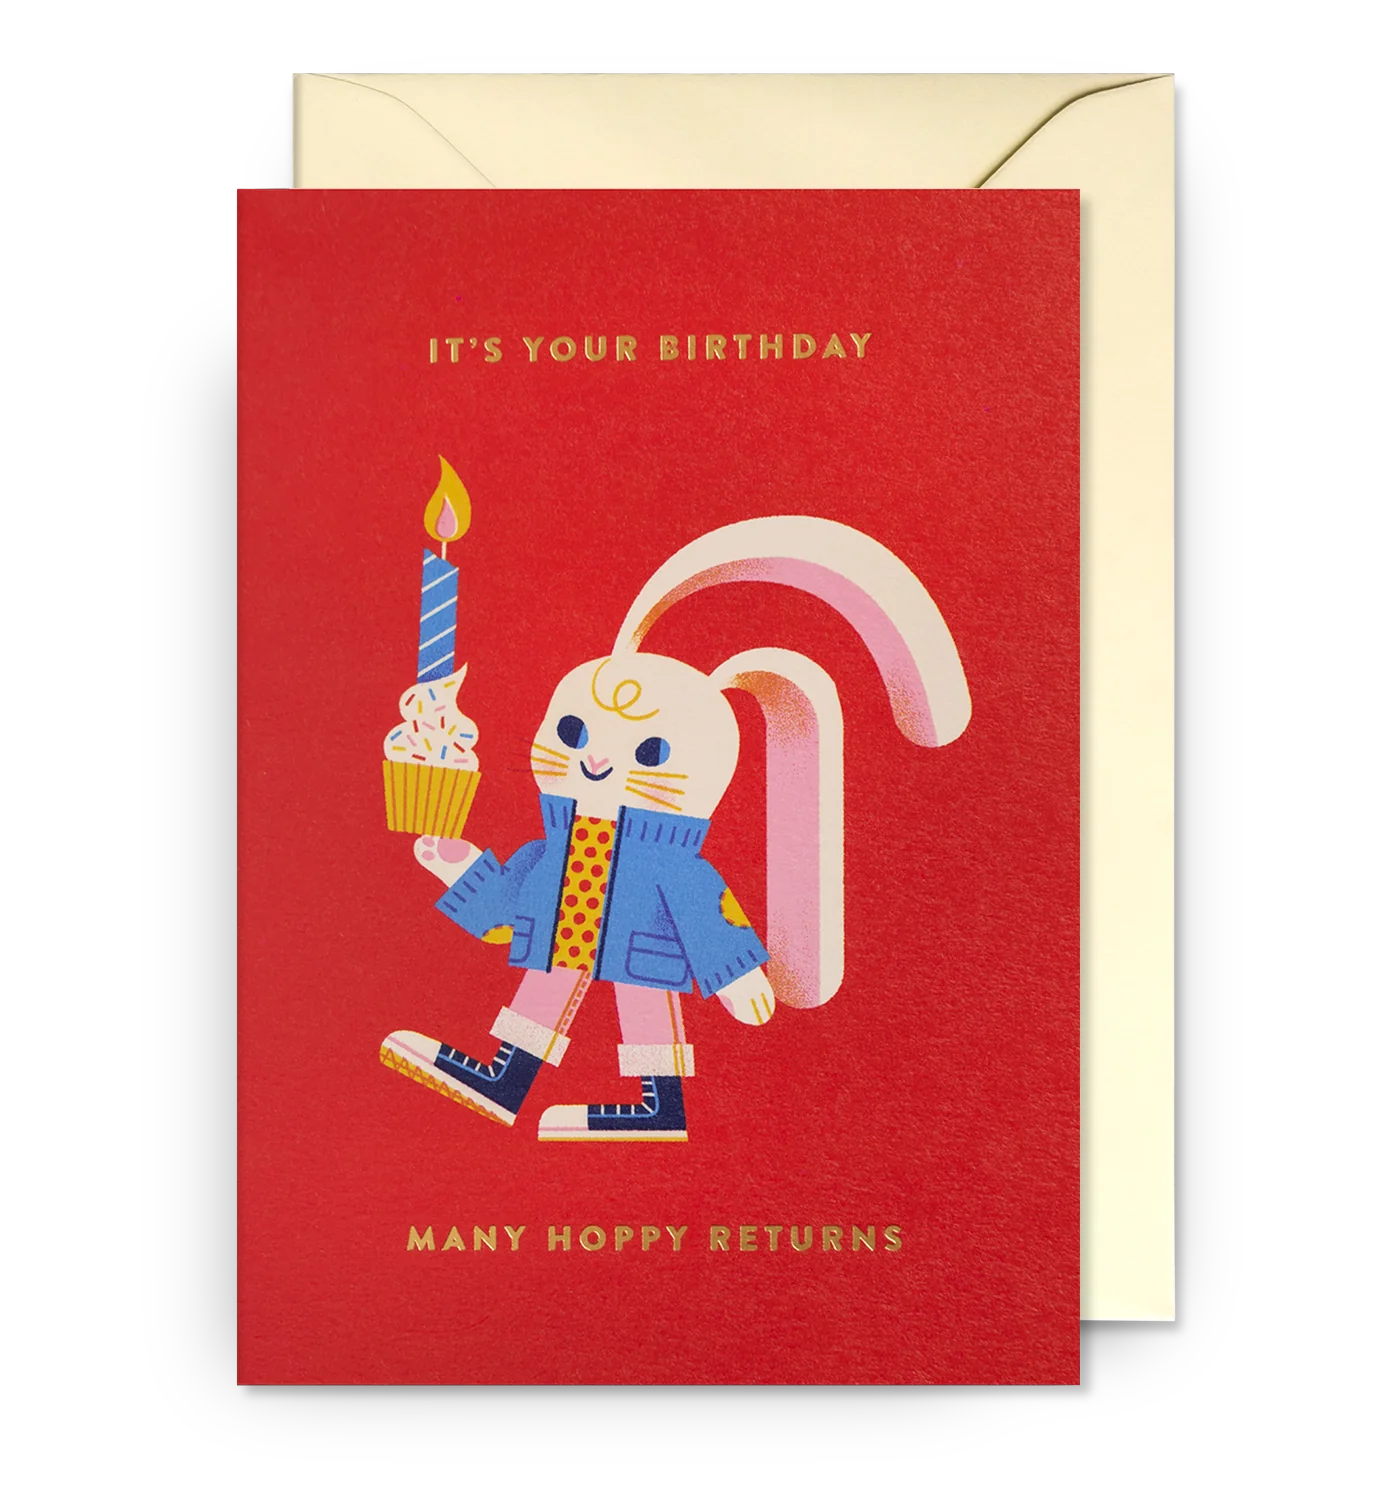 It's Your Birthday, Many Hoppy Returns Birthday Card by Lydia Nichols